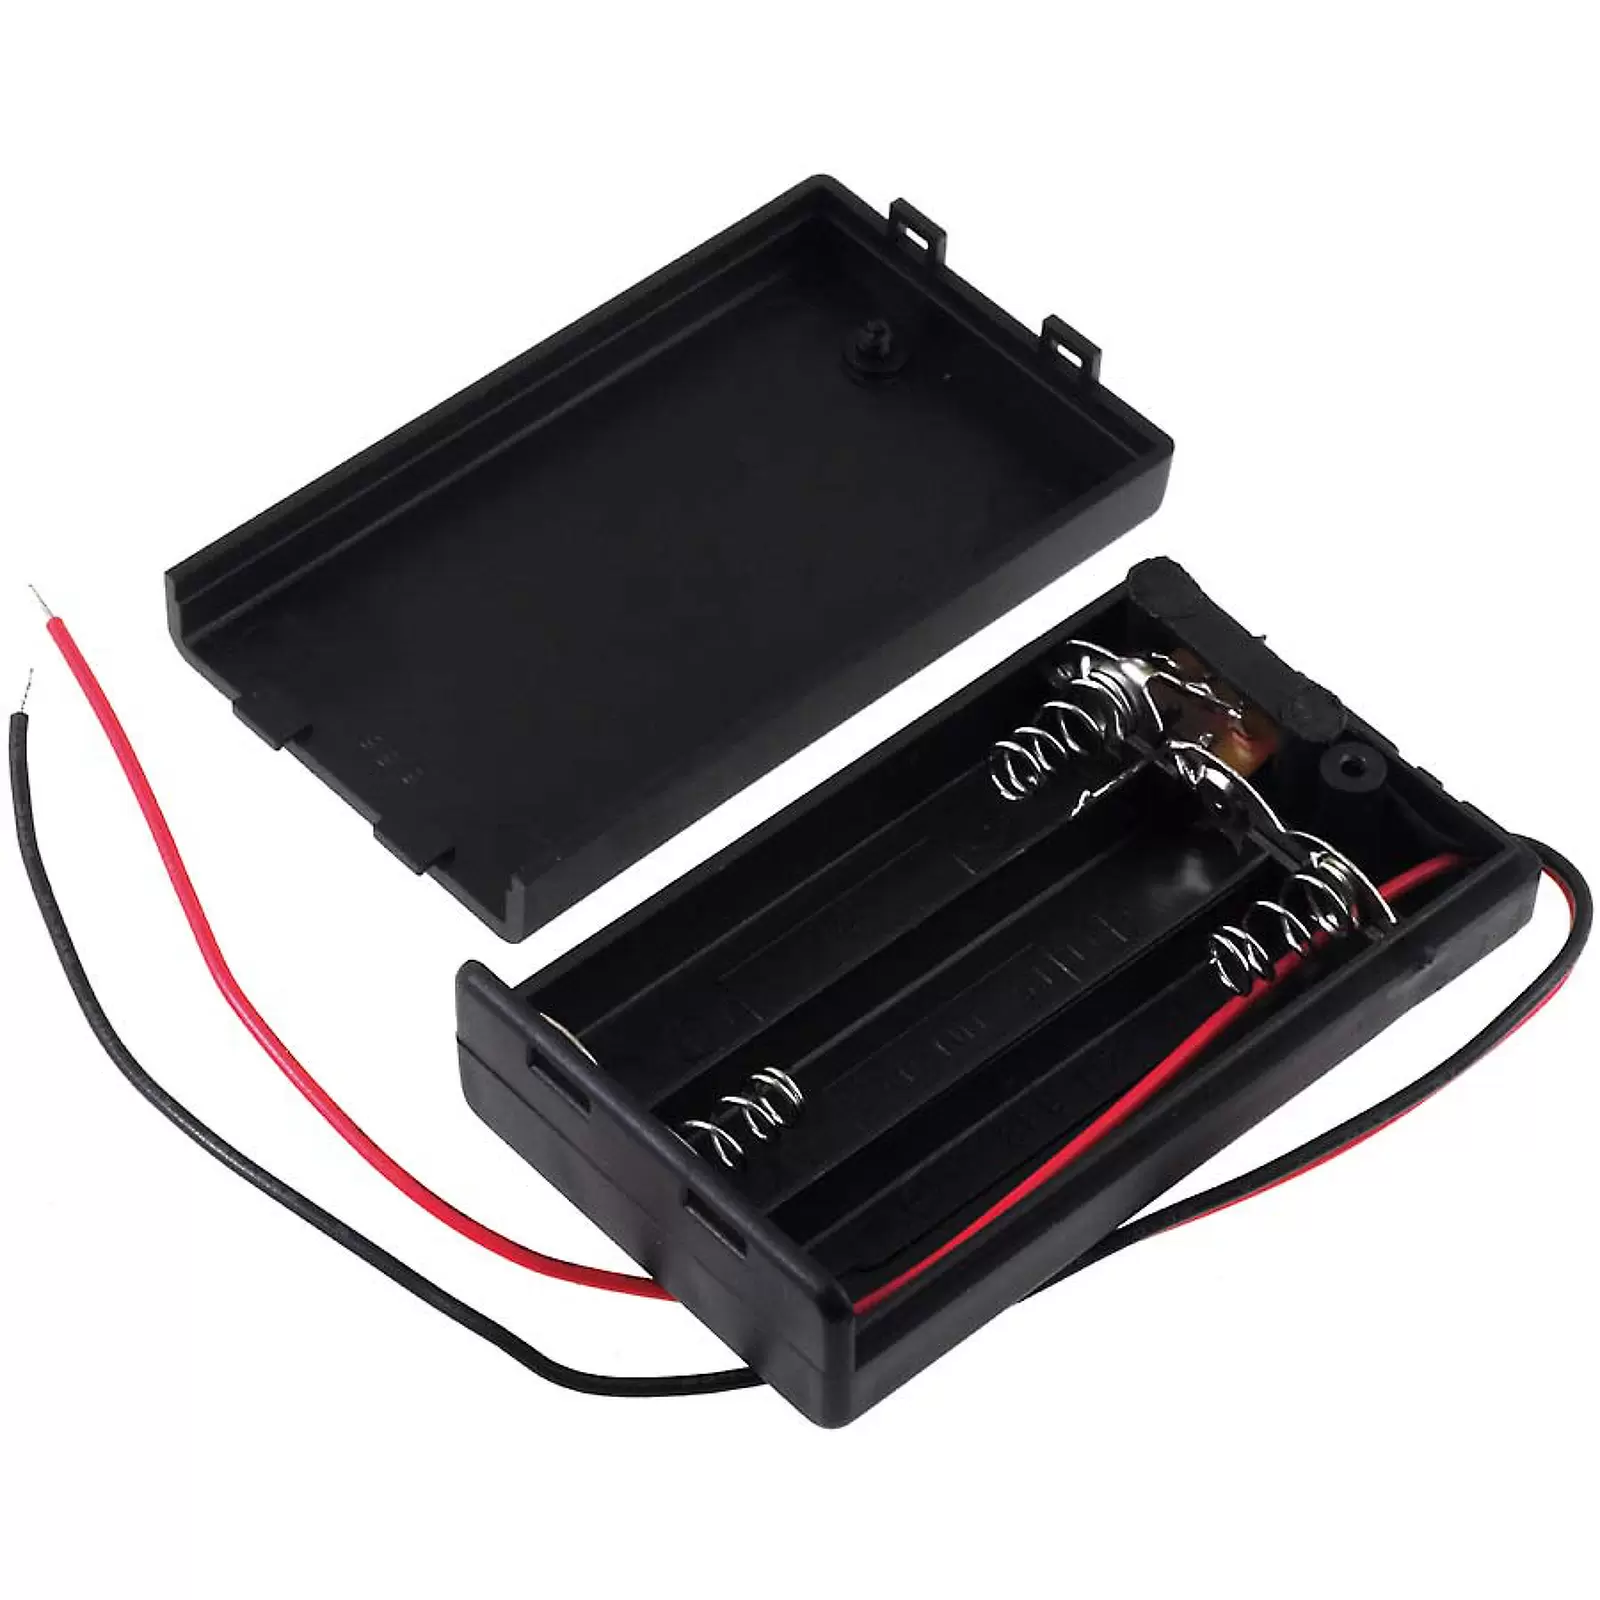 Batteriehalter für 3x Micro/AAA Batterien mit Anschlusskabel